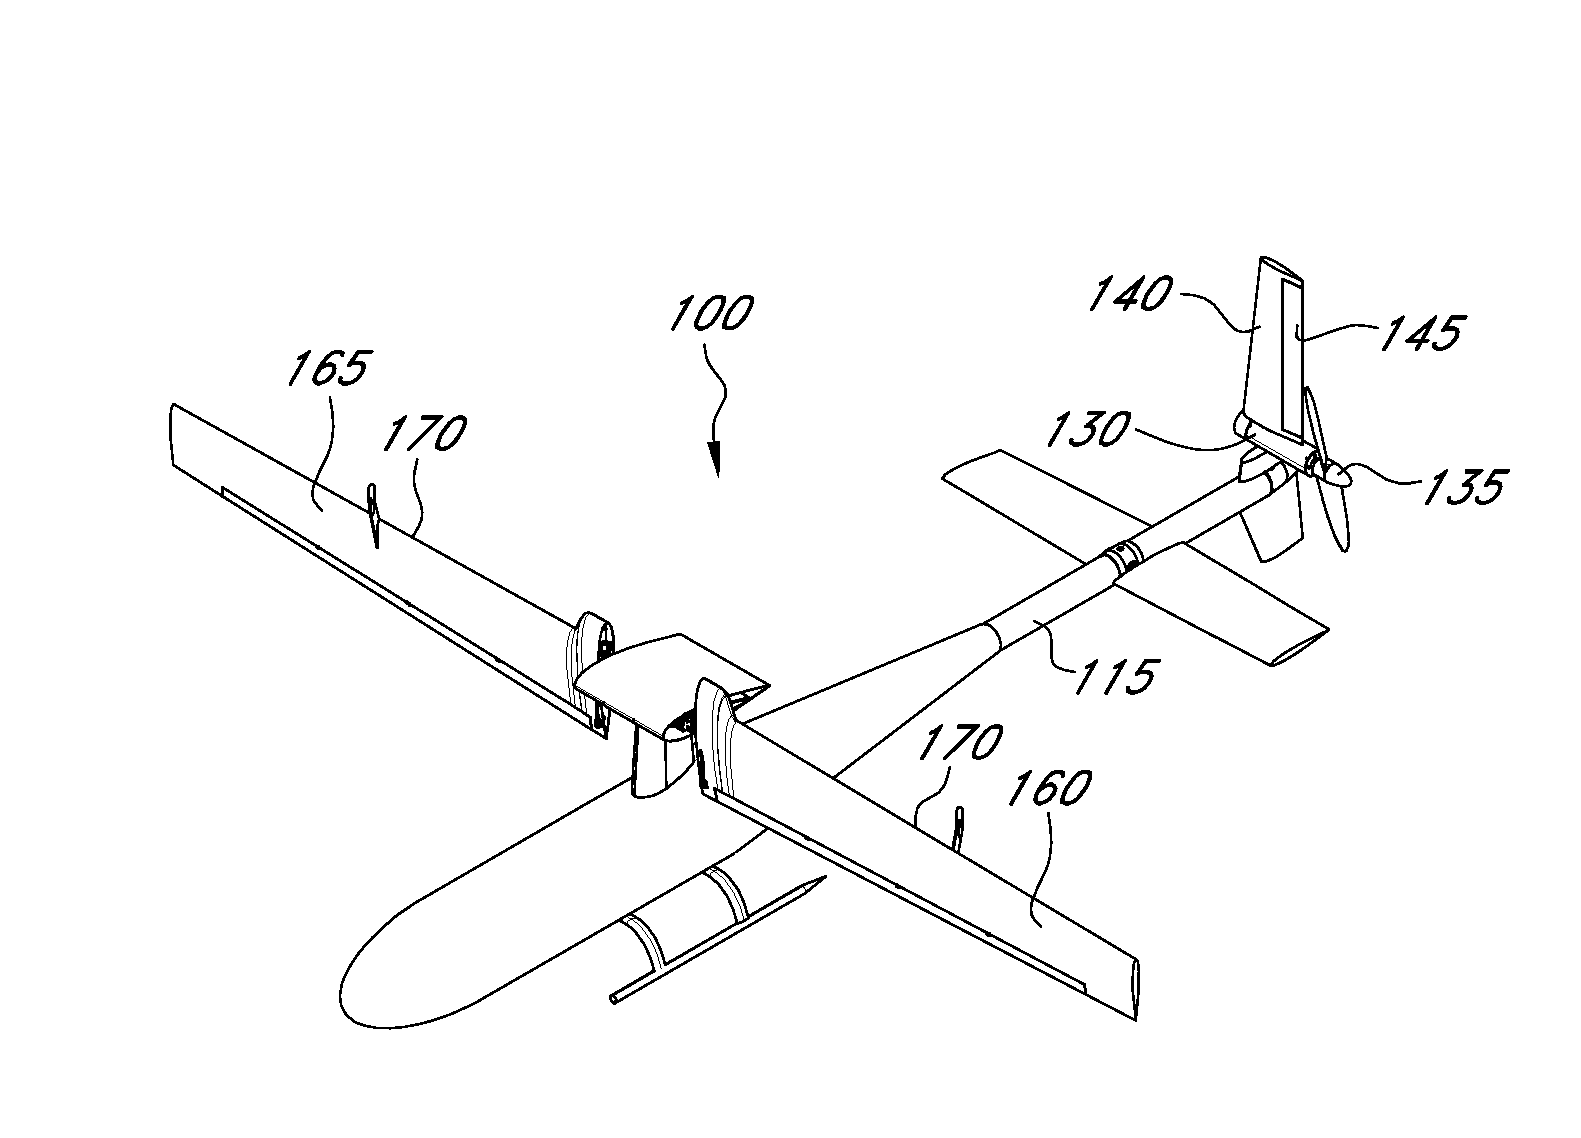 Stop-rotor rotary wing aircraft